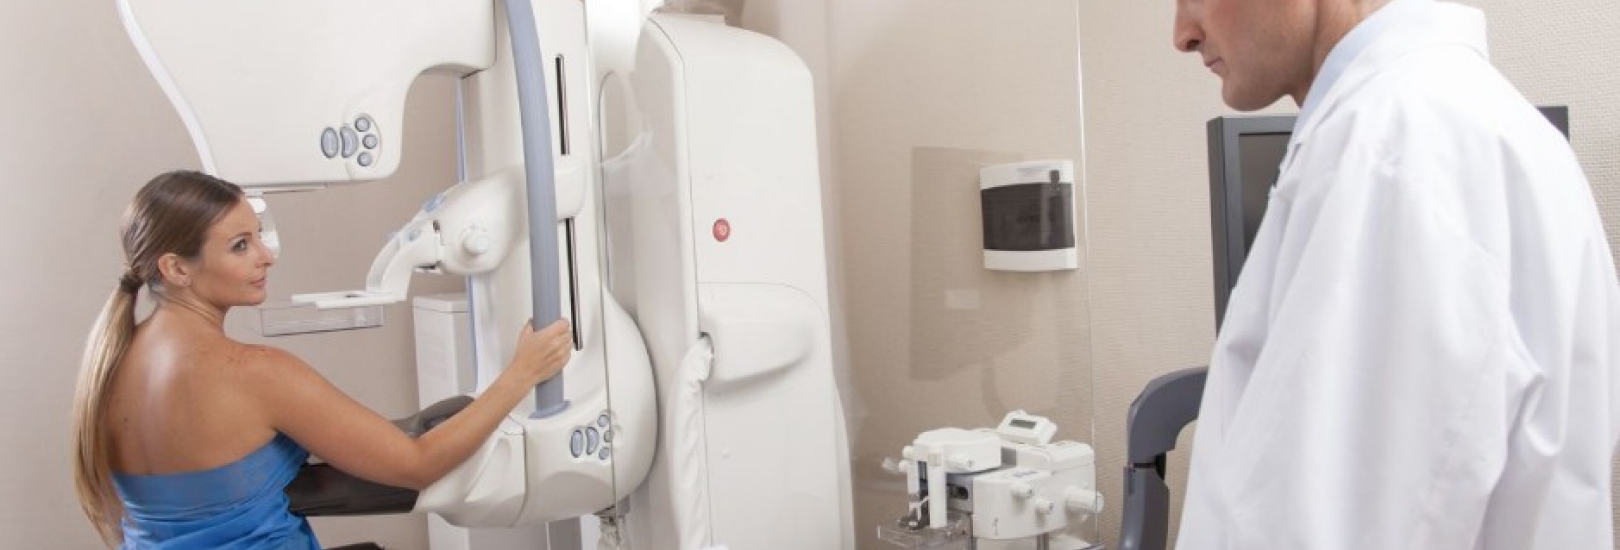 Mammographie-Screening